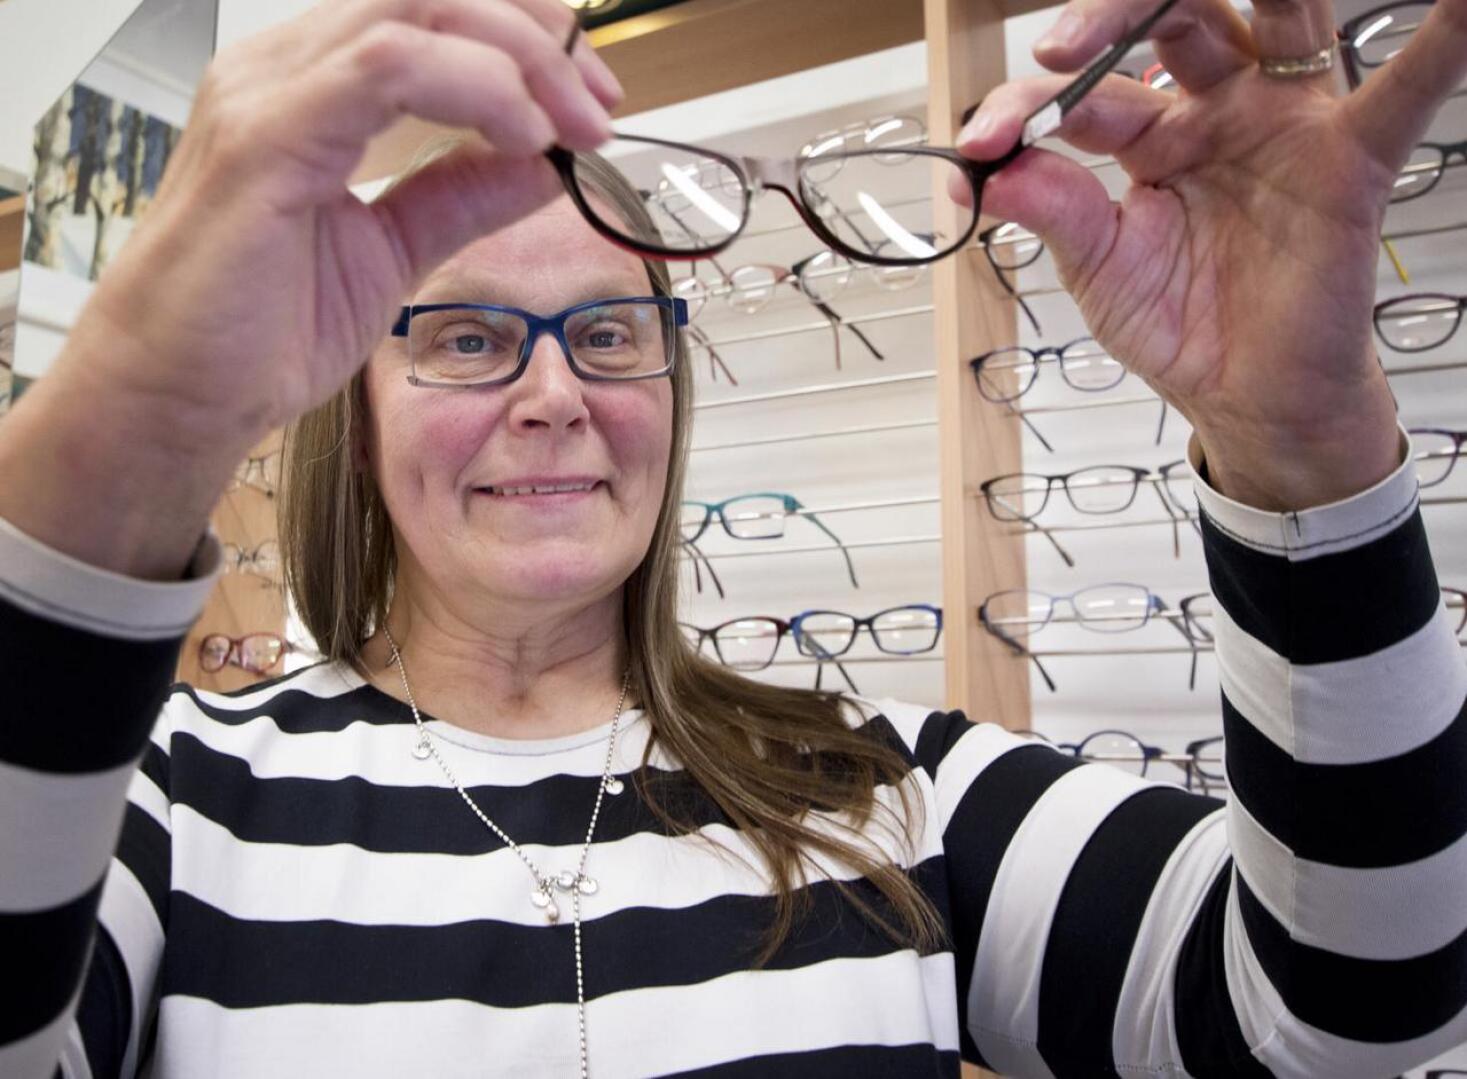 Eeva Närhen pätevyyttä testattiin aikoinaan optikkoalan pääsykokeissa rautalangalla. Hakijan piti pyöritellä annetusta langasta silmälasit mahdollisimman nopeasti.